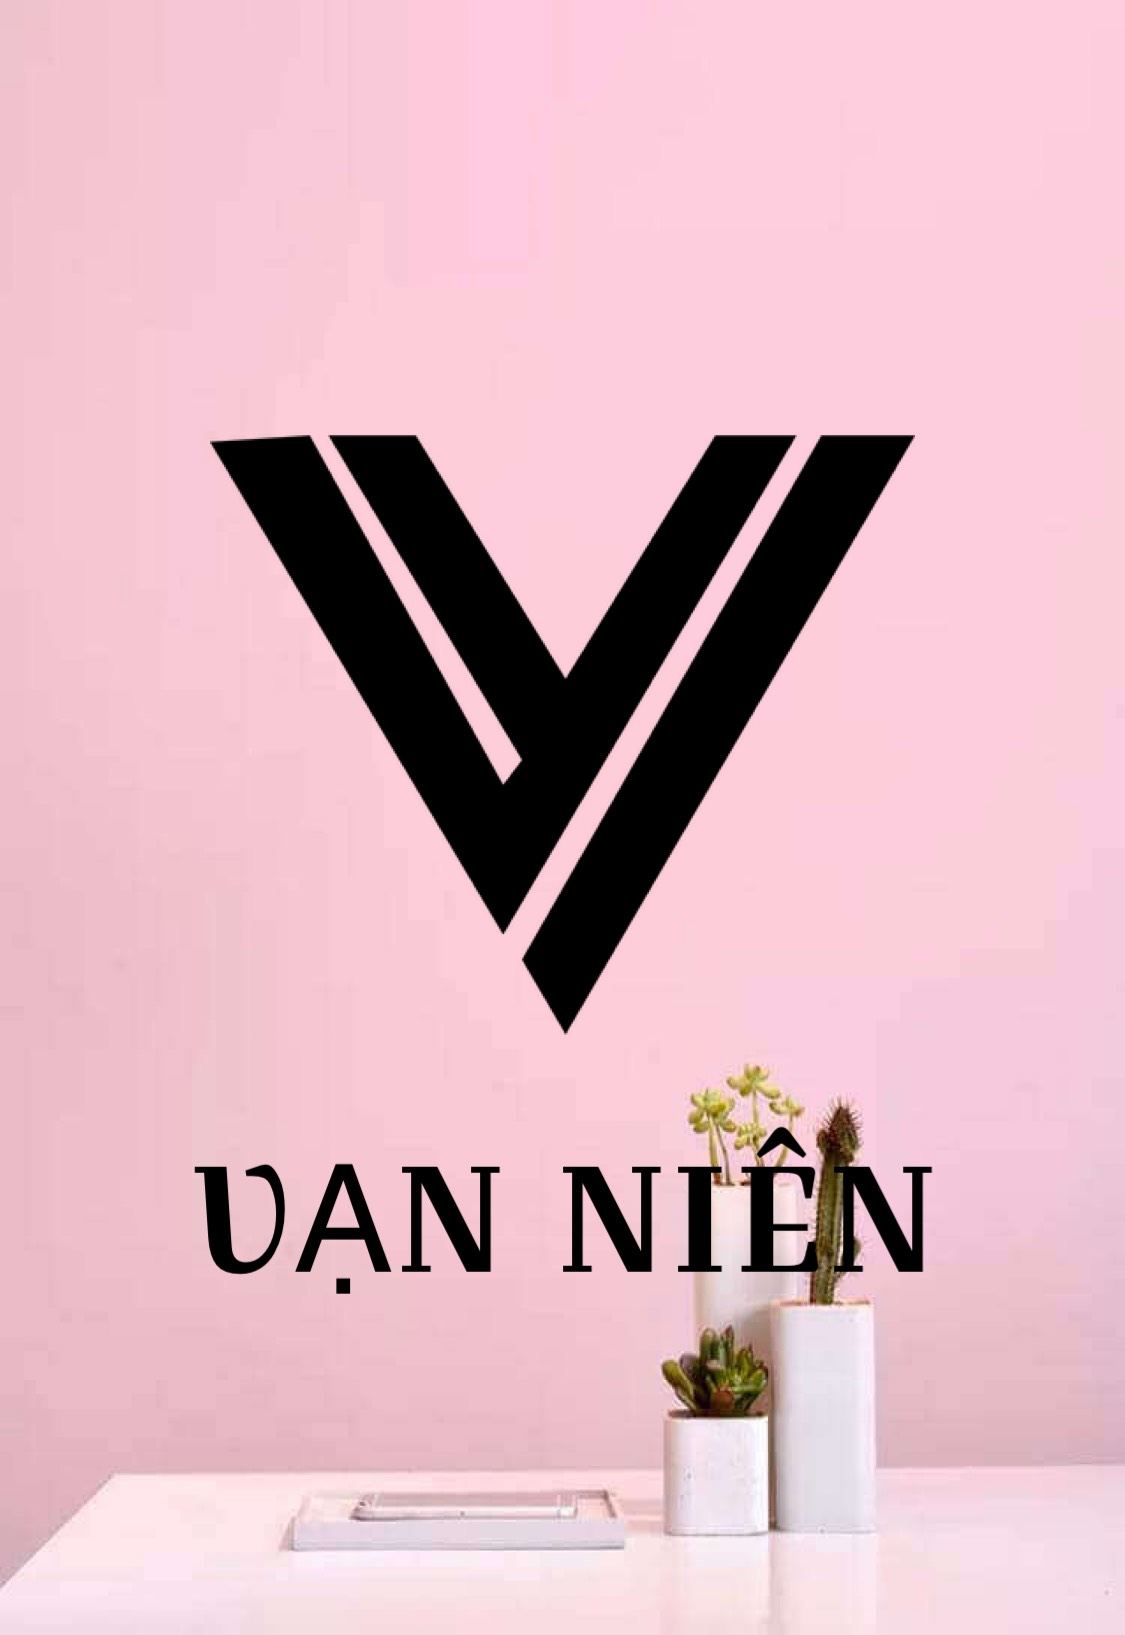 Van Nien shop